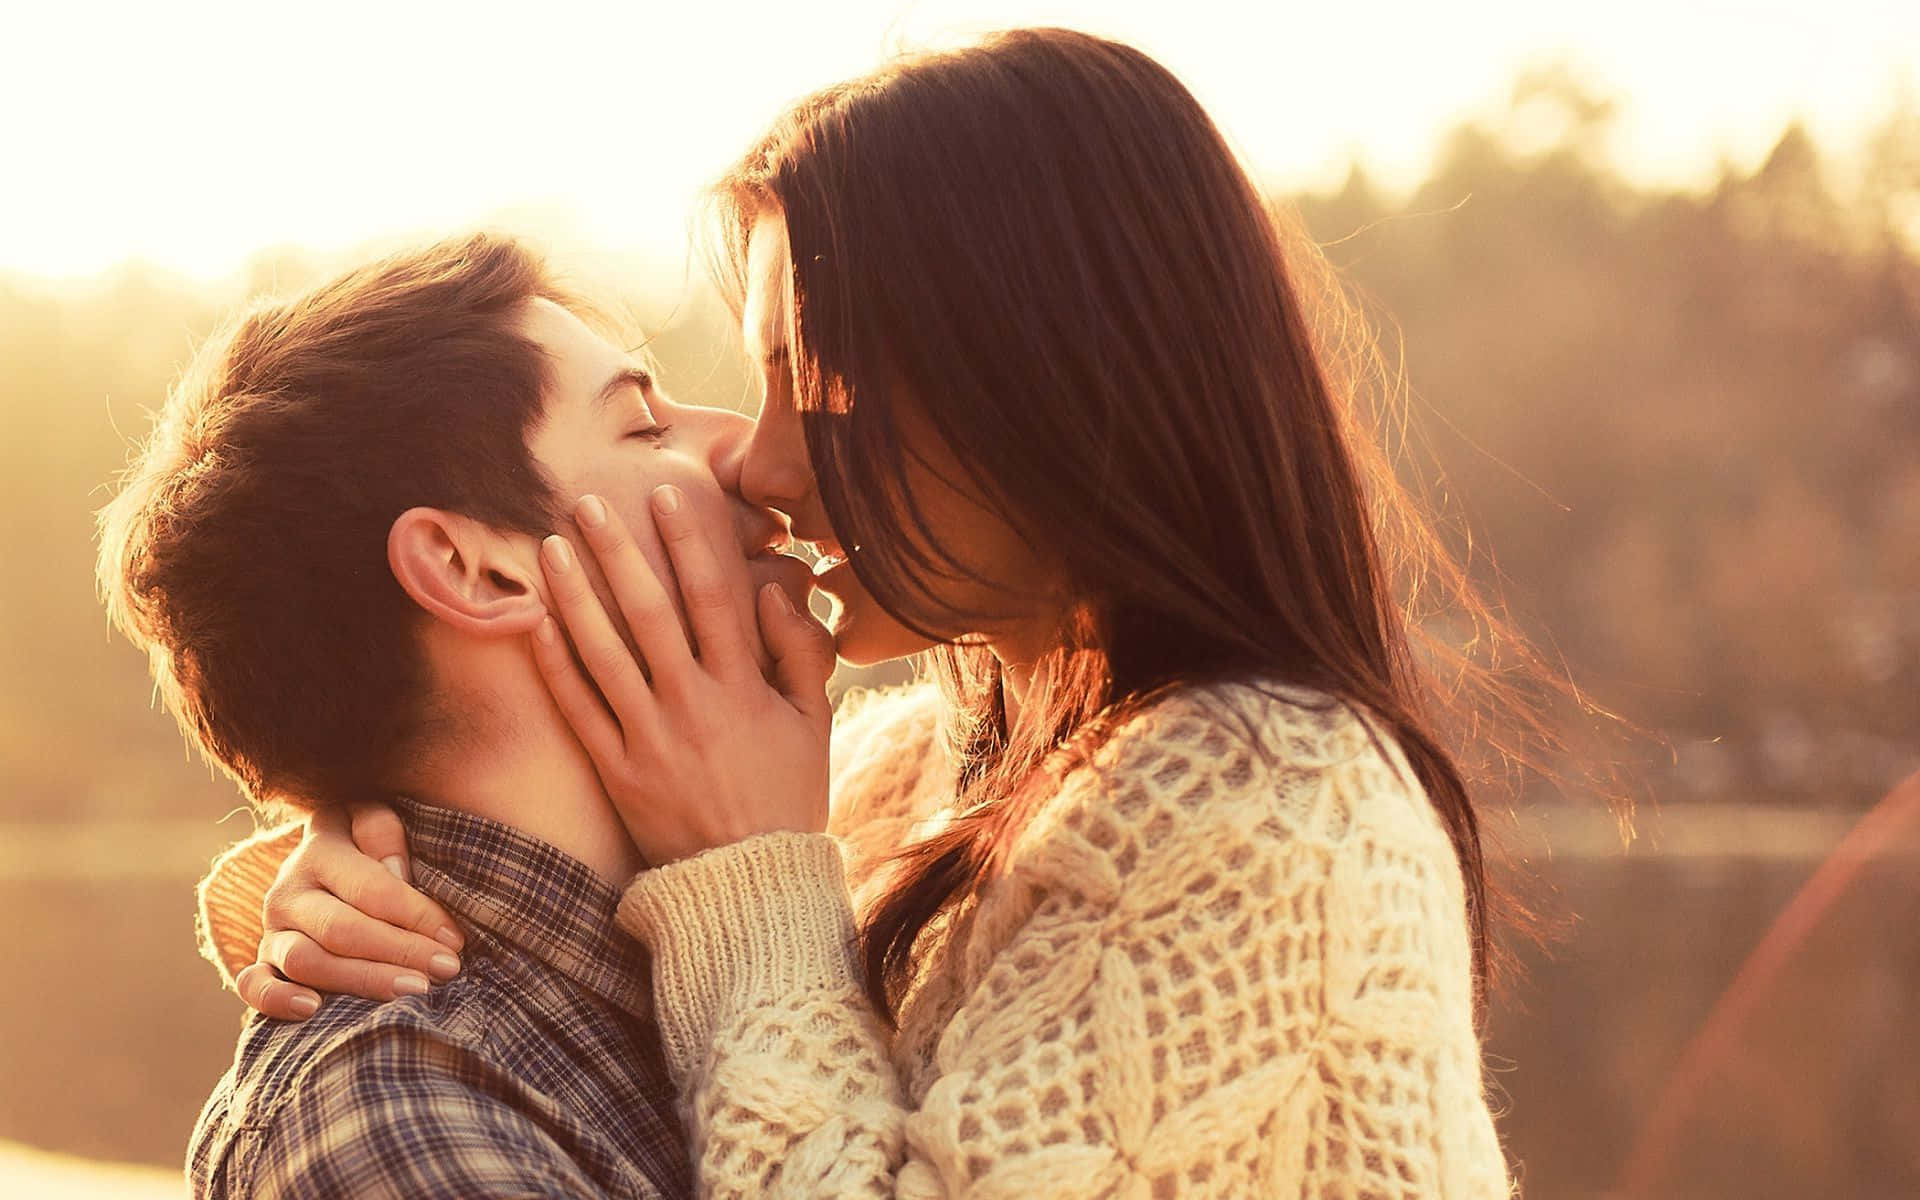 Красивое видео целующихся. Поцелуй влюбленных. Влюбленные целуются. Парень целует девушку. Парень и девушка целуются.